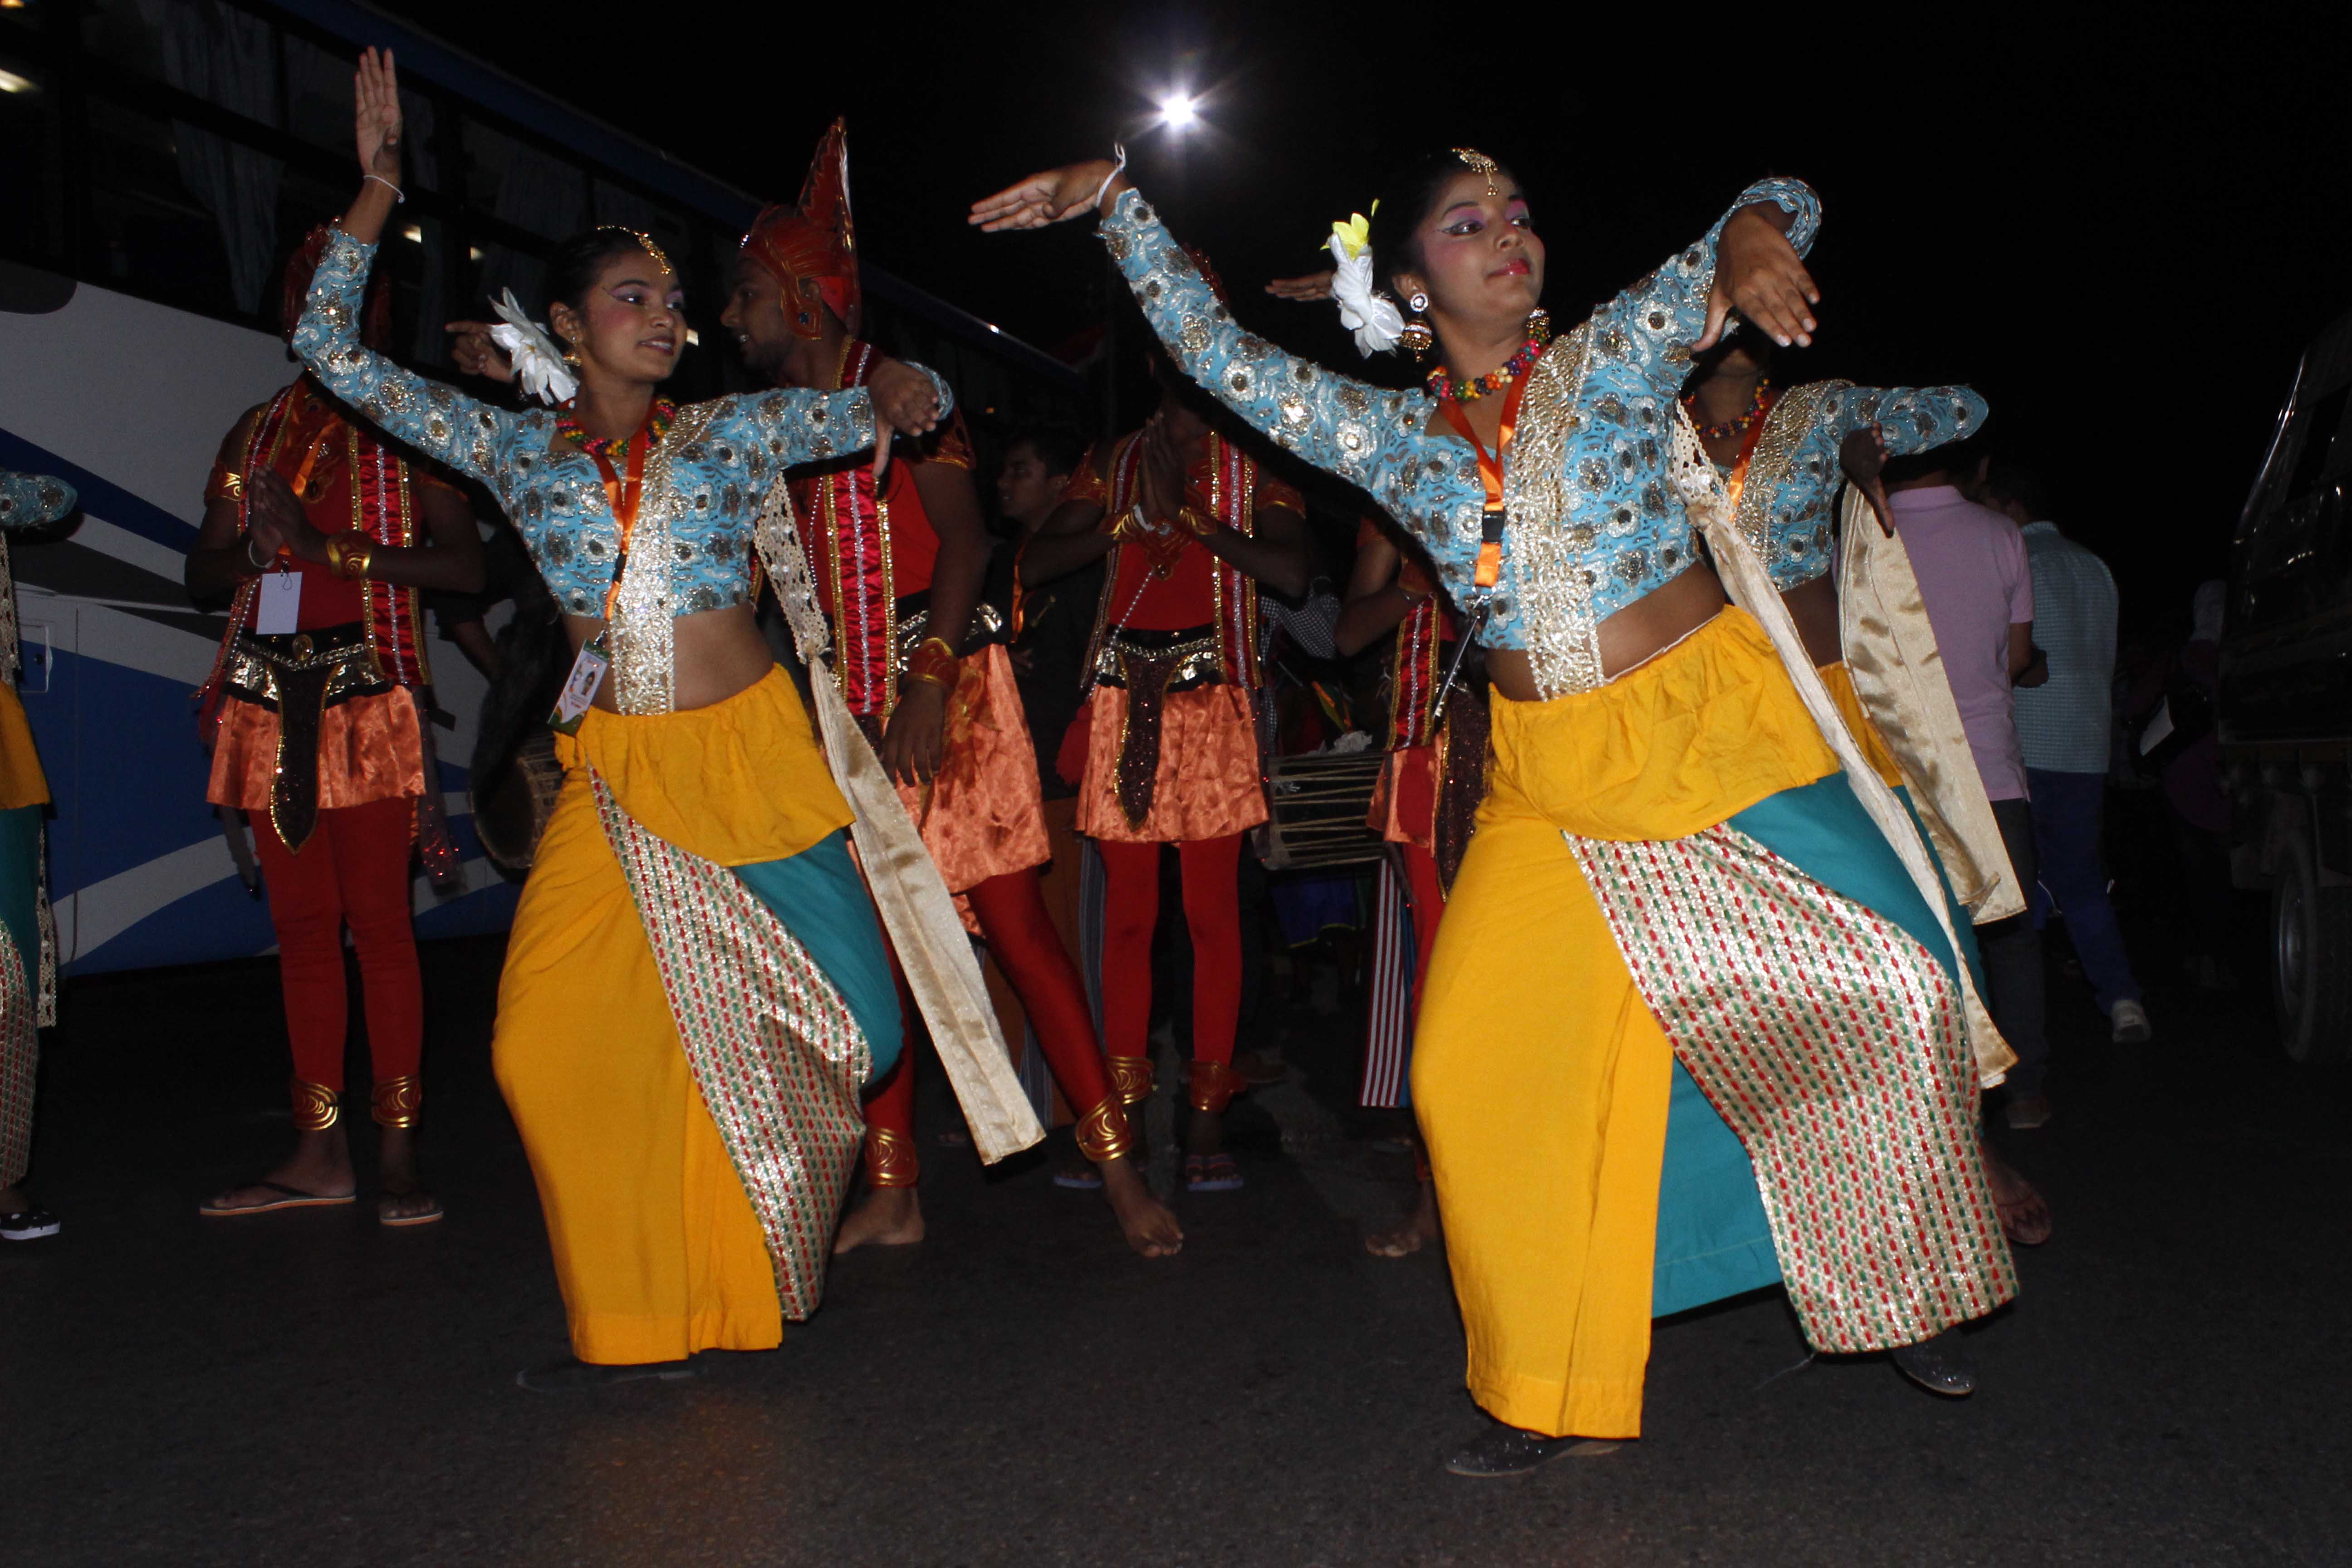 عرض  راقص في  افتتاح  مهرجان الإسماعيلية  للفنون الشعبية  - تصوير  محمد عوض  (4)